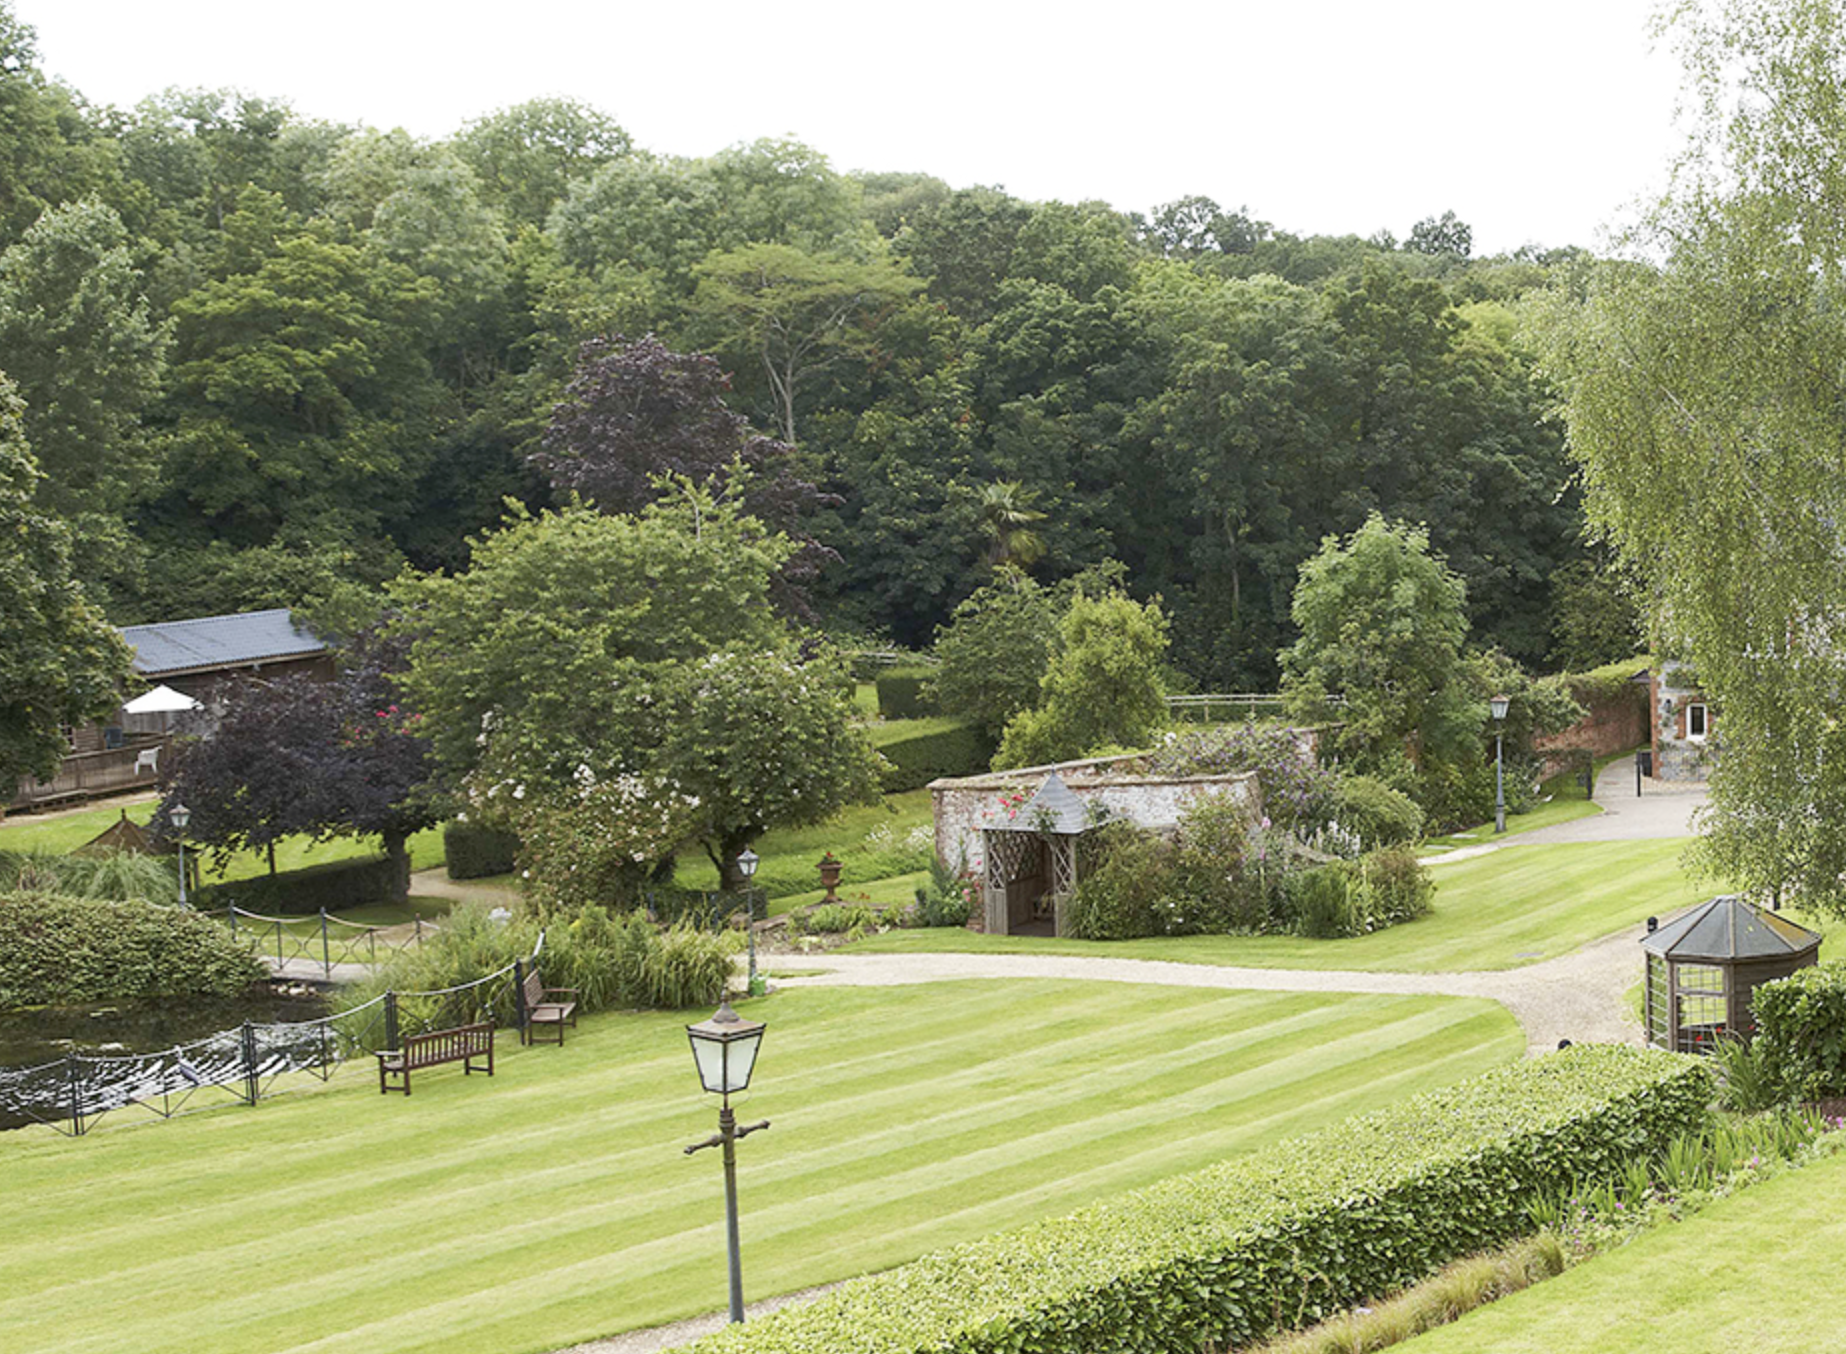 Garden of Beauchamp House care home in Taunton, Devon